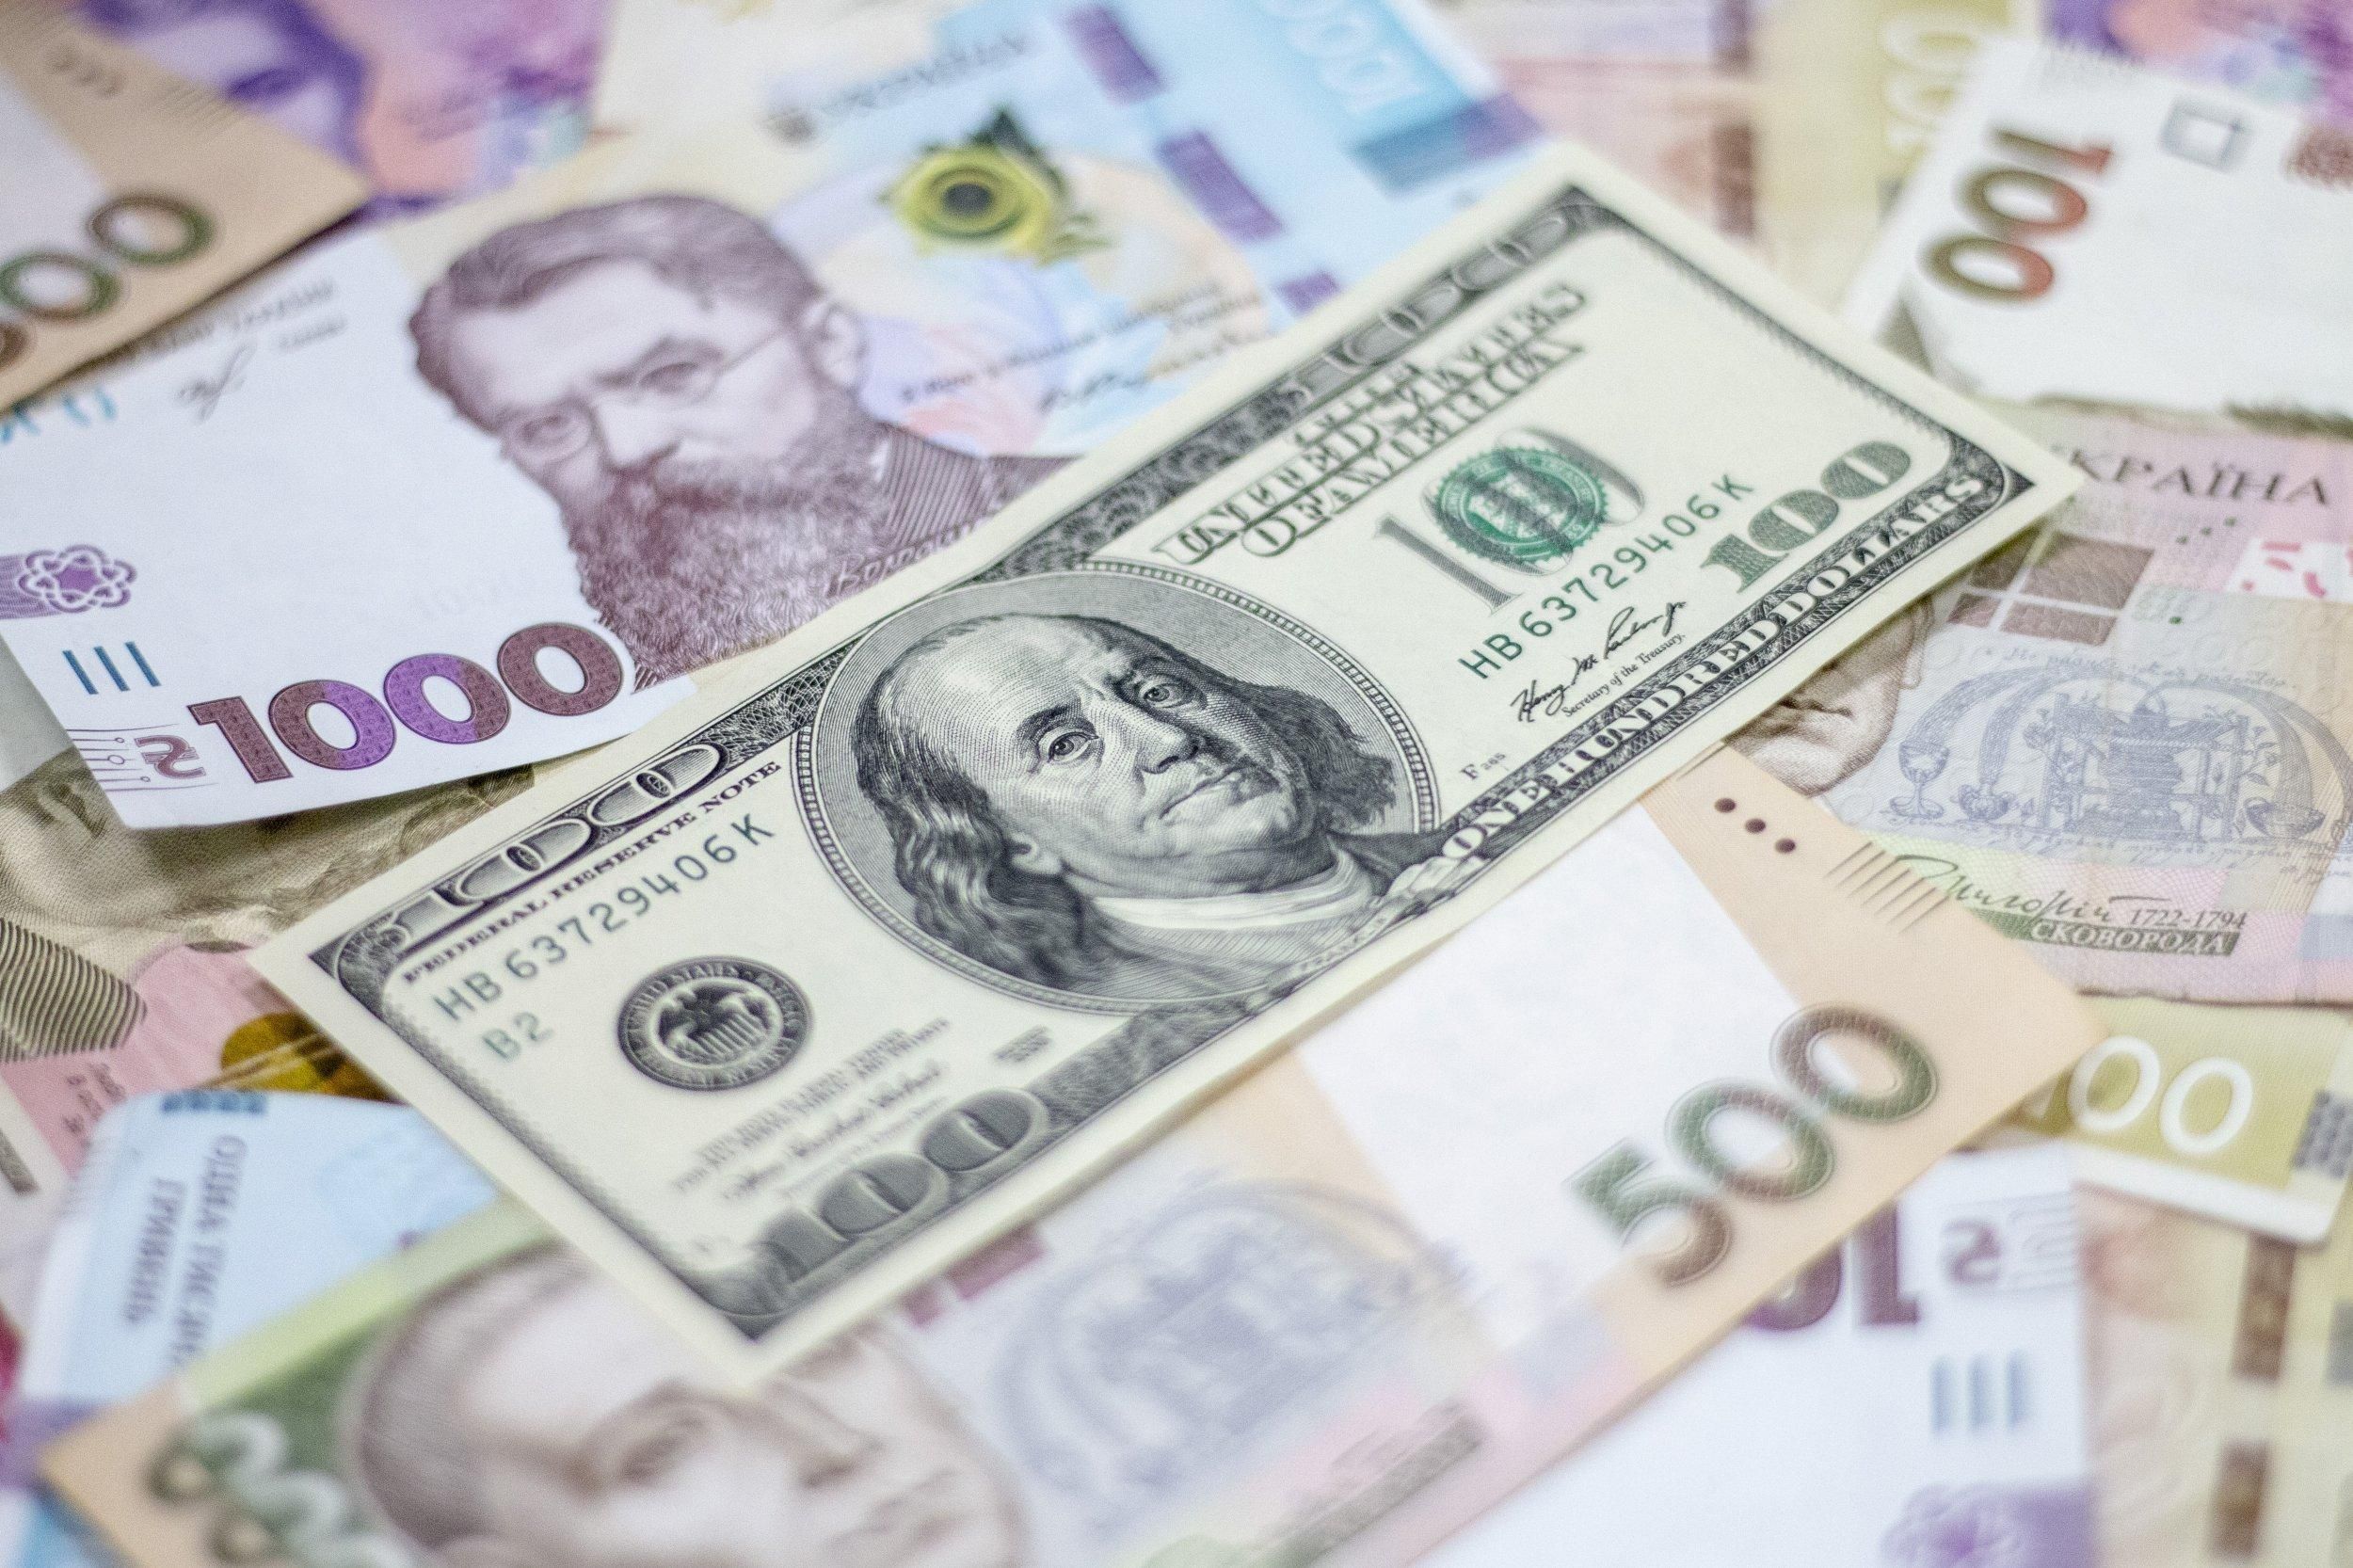  Курс доллара и укрепление гривны: что будет дальше с экономикой Украины